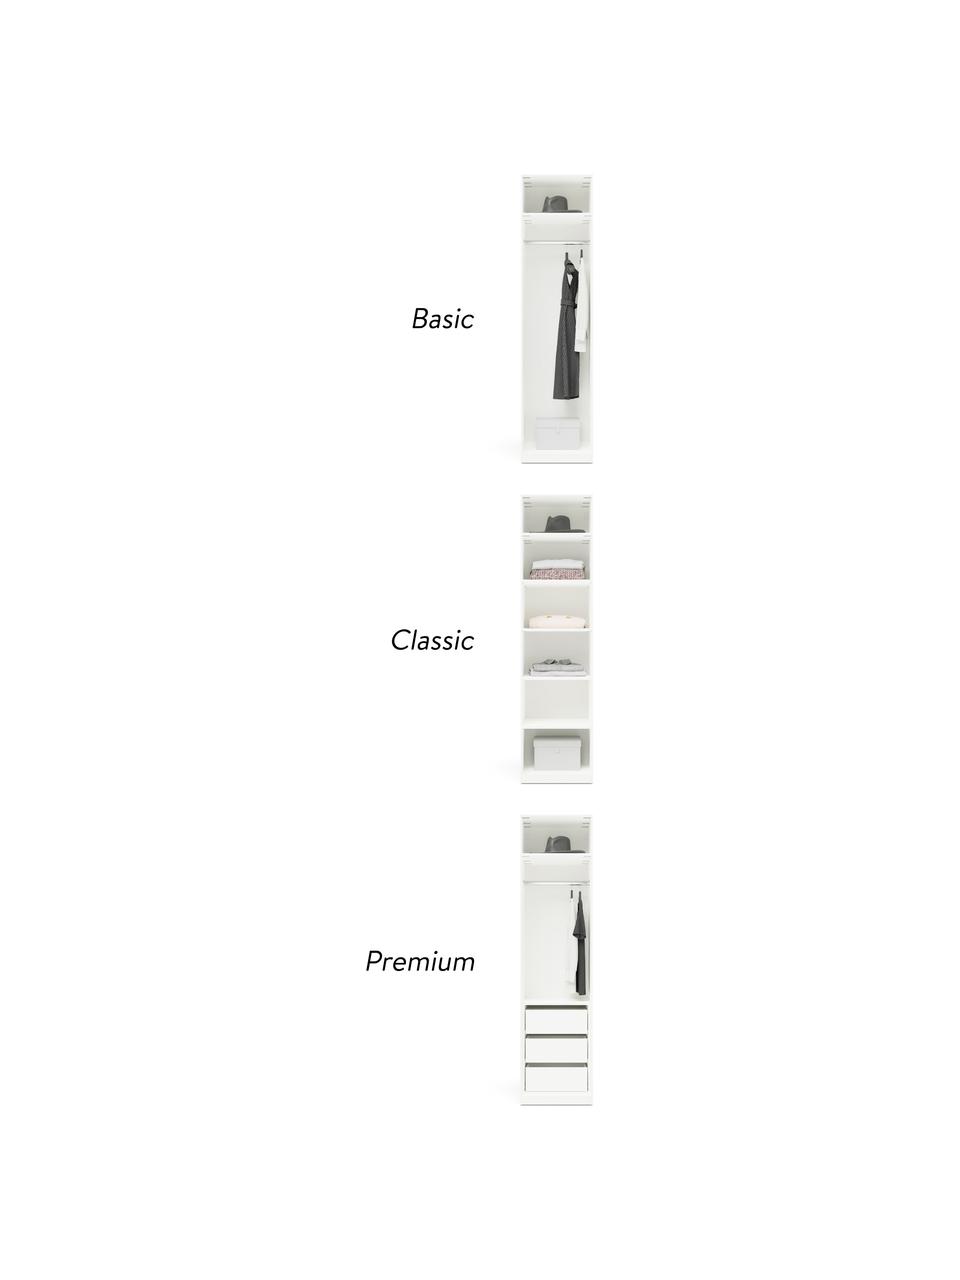 Modularer Drehtürenschrank Charlotte in Weiß, 50 cm Breite, mehrere Varianten, Korpus: Spanplatte, melaminbeschi, Weiß, Basic Interior, Höhe 200 cm